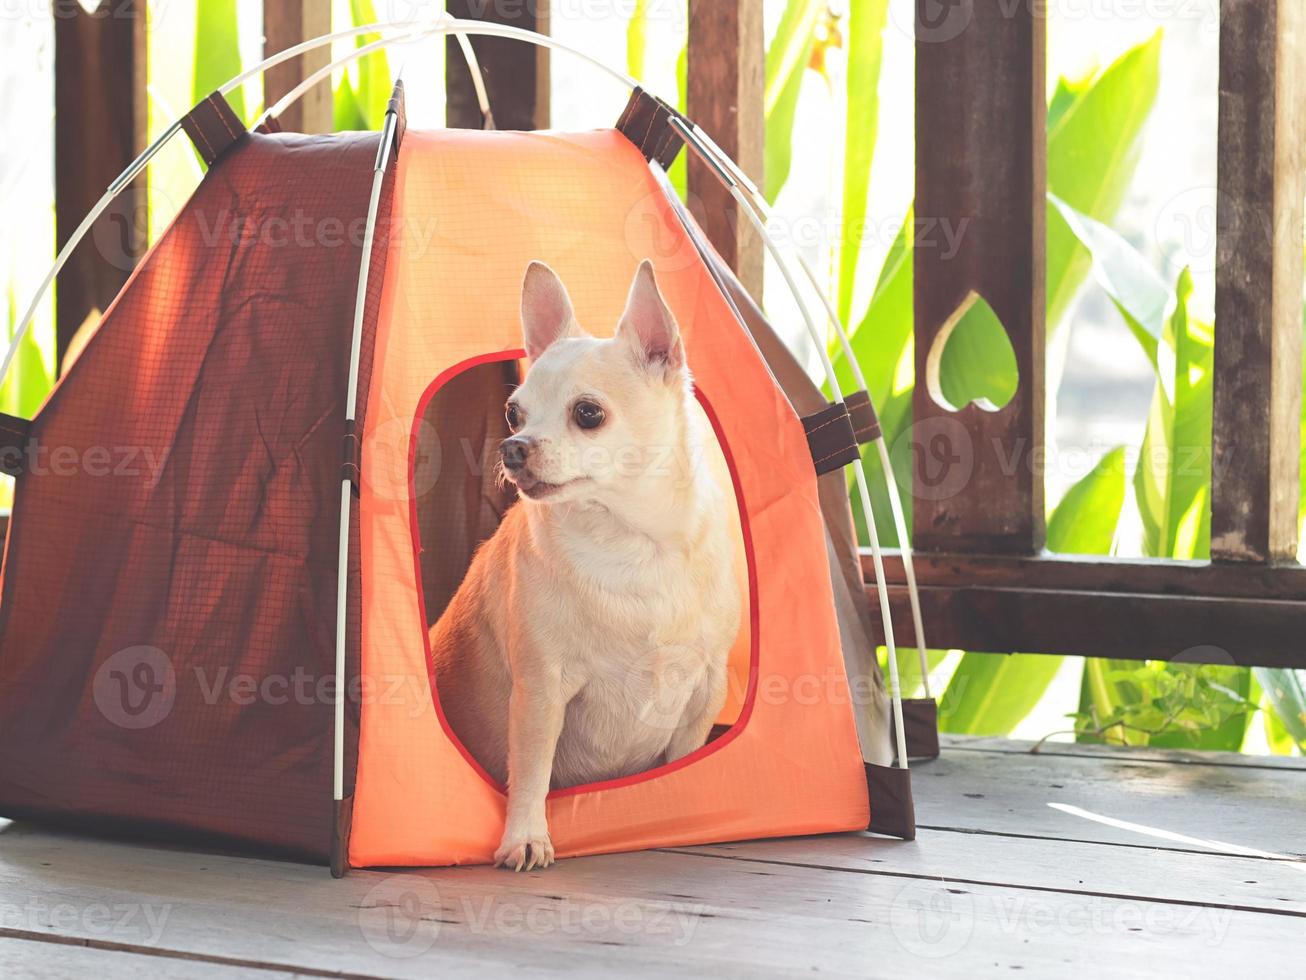 brun kort hår chihuahua hund Sammanträde inuti orange camping tält på trä- golv, trä- staket med hjärta form bakgrund, ser ut av de tält. sällskapsdjur resa begrepp. foto